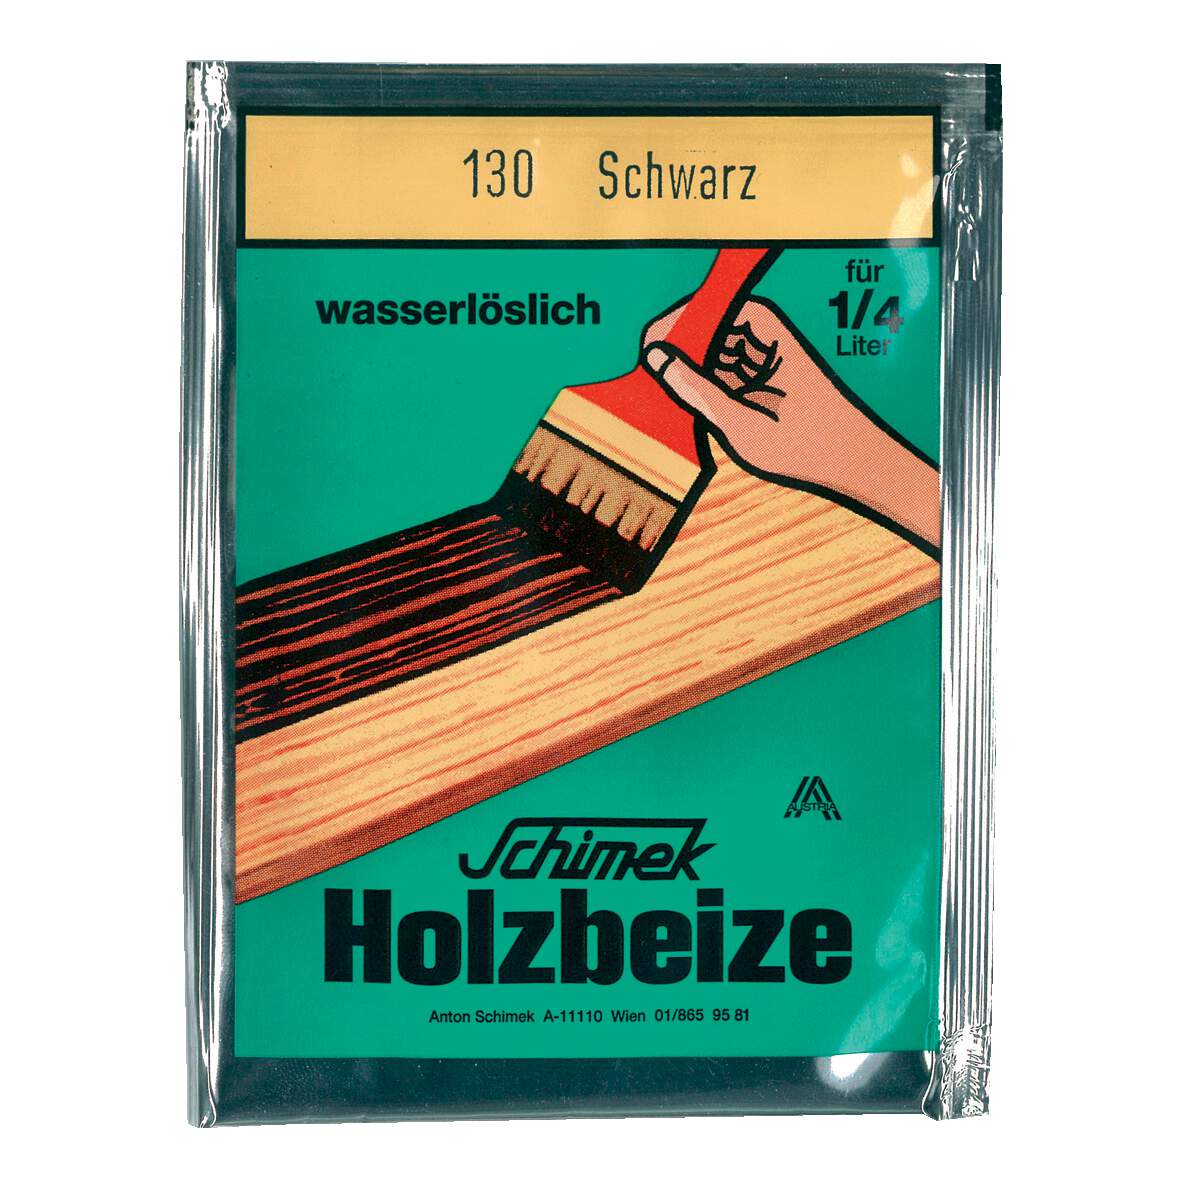 1216616 - Holzbeize wasserlöslich